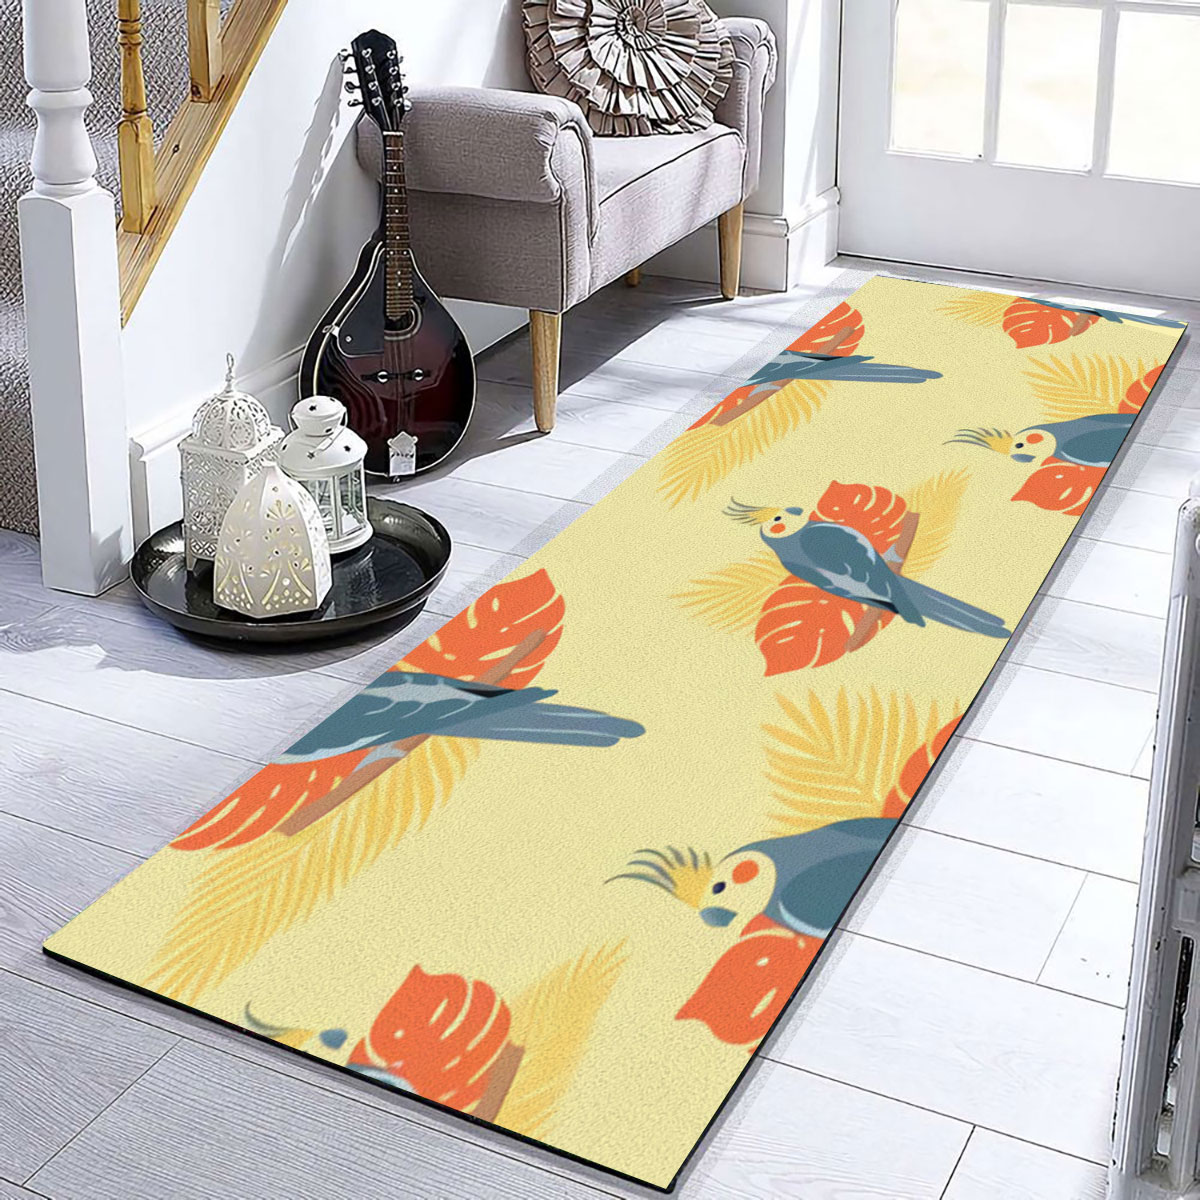 Cockatiel On Yellow Runner Carpet